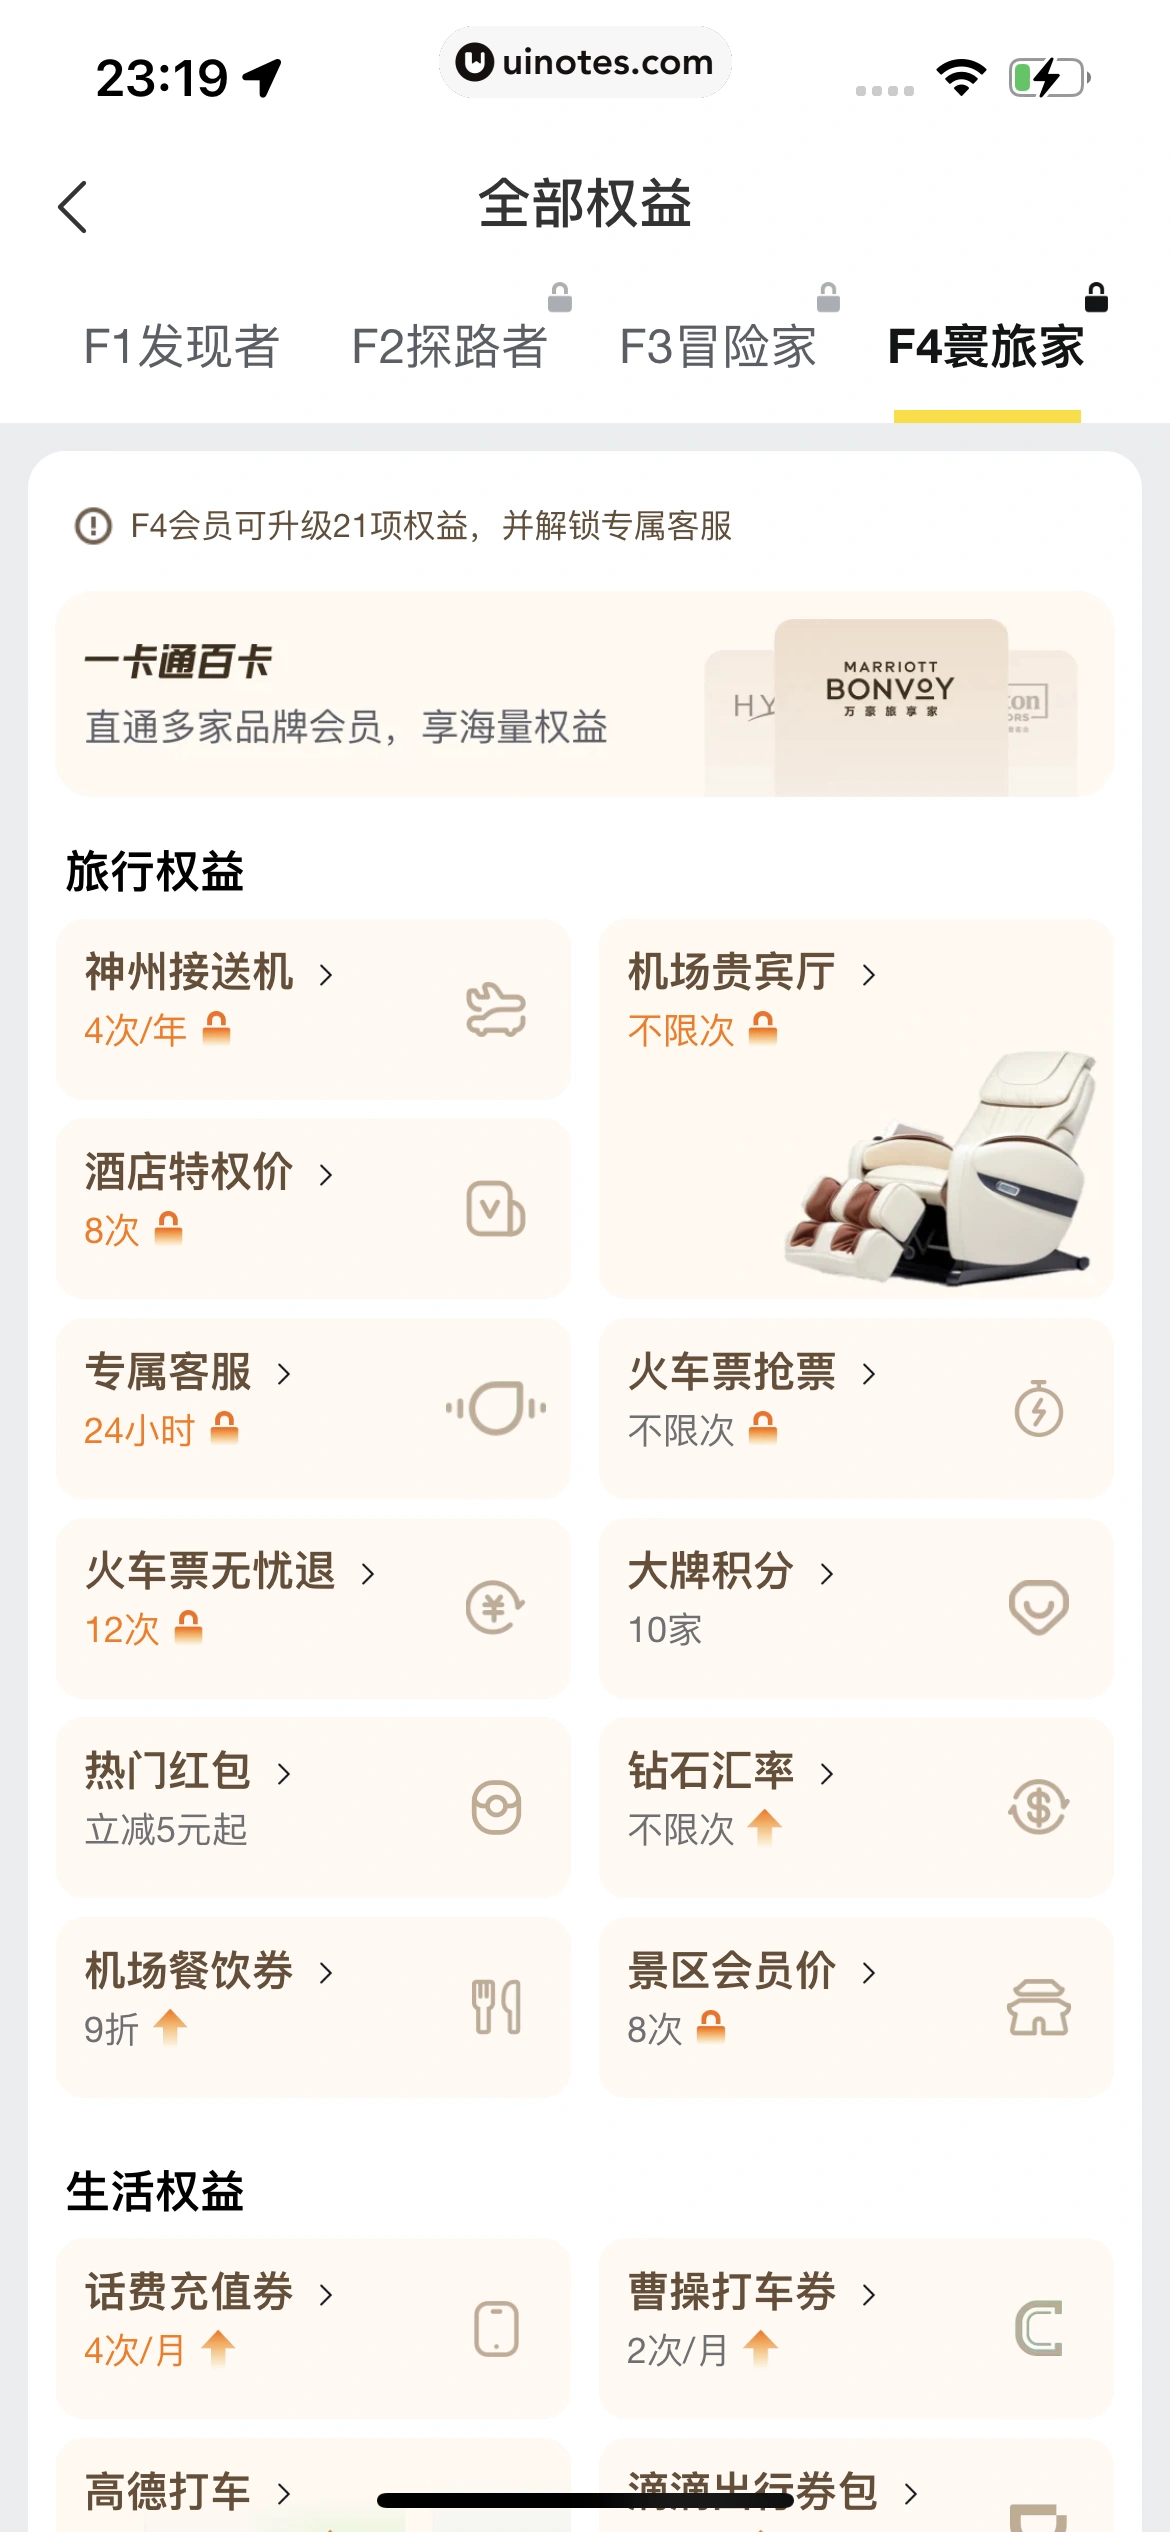 飞猪旅行 App 截图 852 - UI Notes